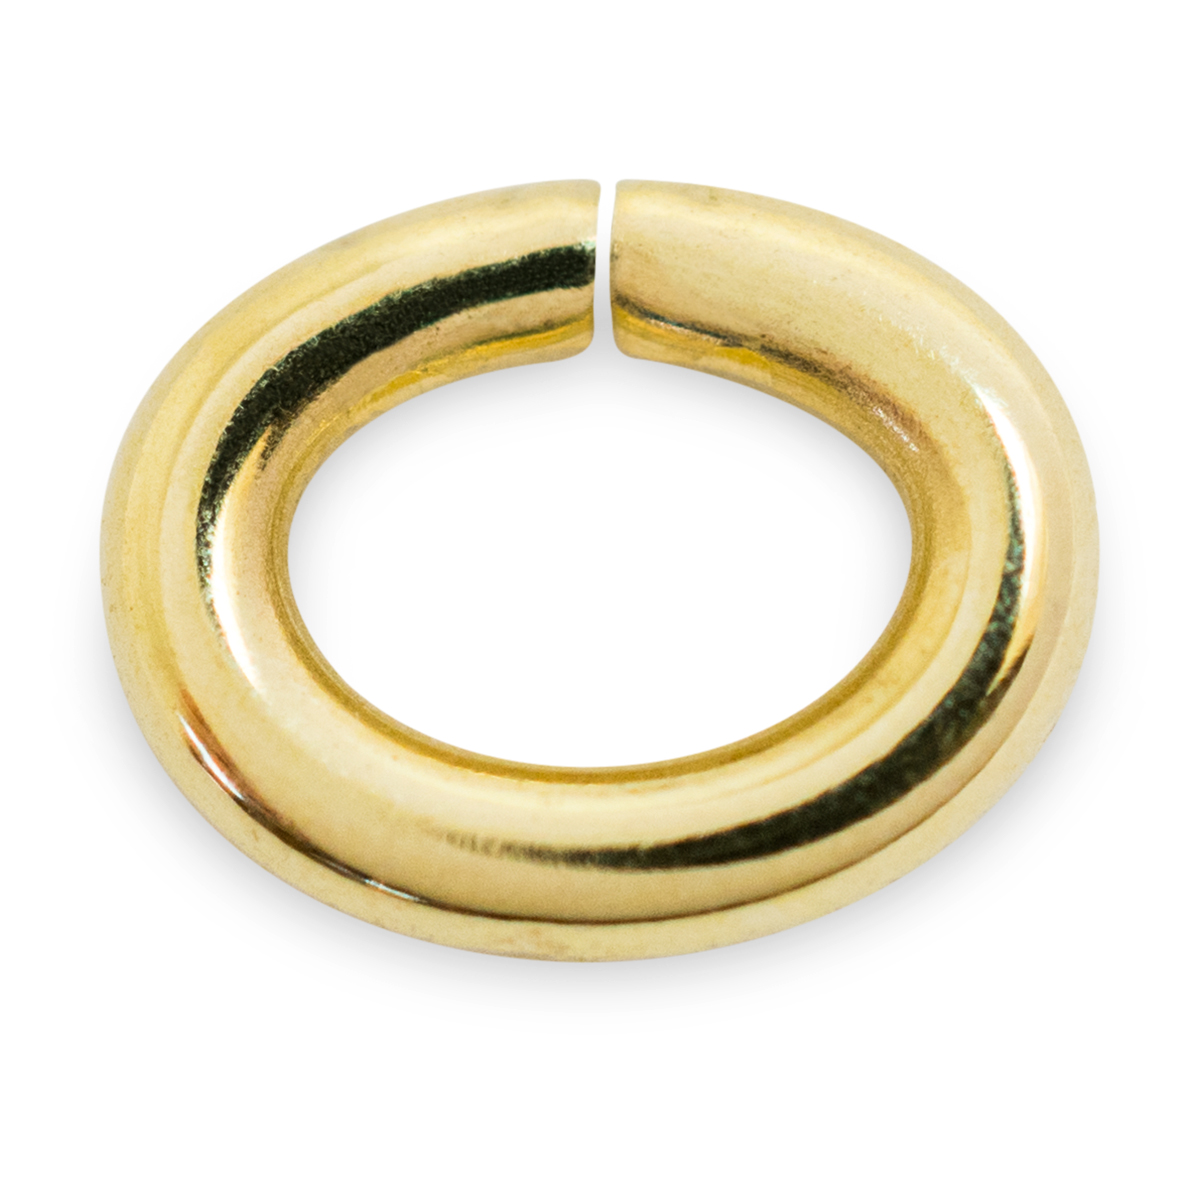 Binderinge, oval, 585/- Gelbgold, Ø 3 mm, Stärke 0,7 mm